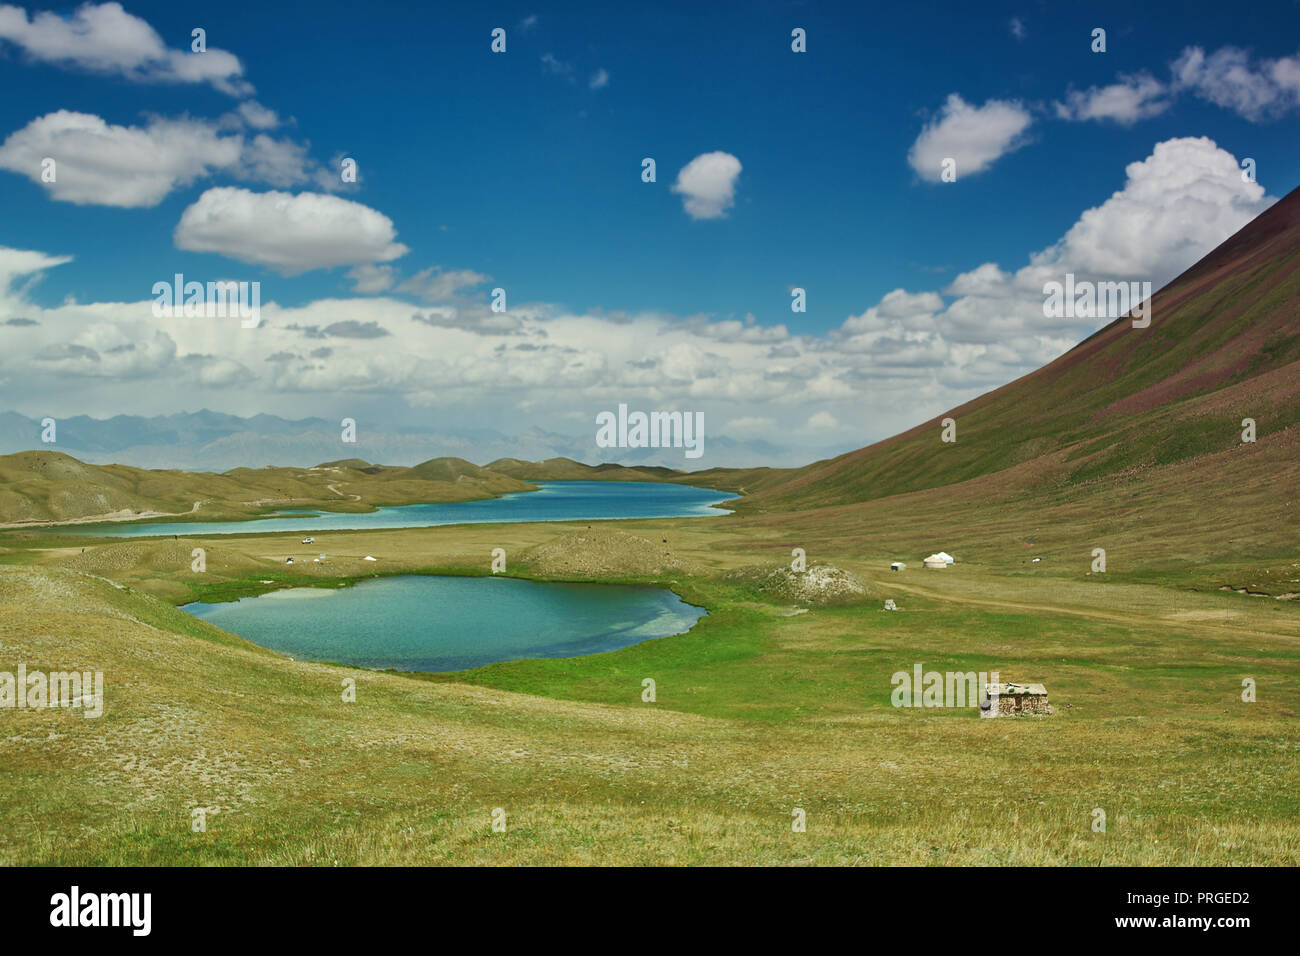 Alay valle della regione in materia di SSL, Kirghizistan, cielo blu su alcuni piccoli bellissimi laghi Foto Stock